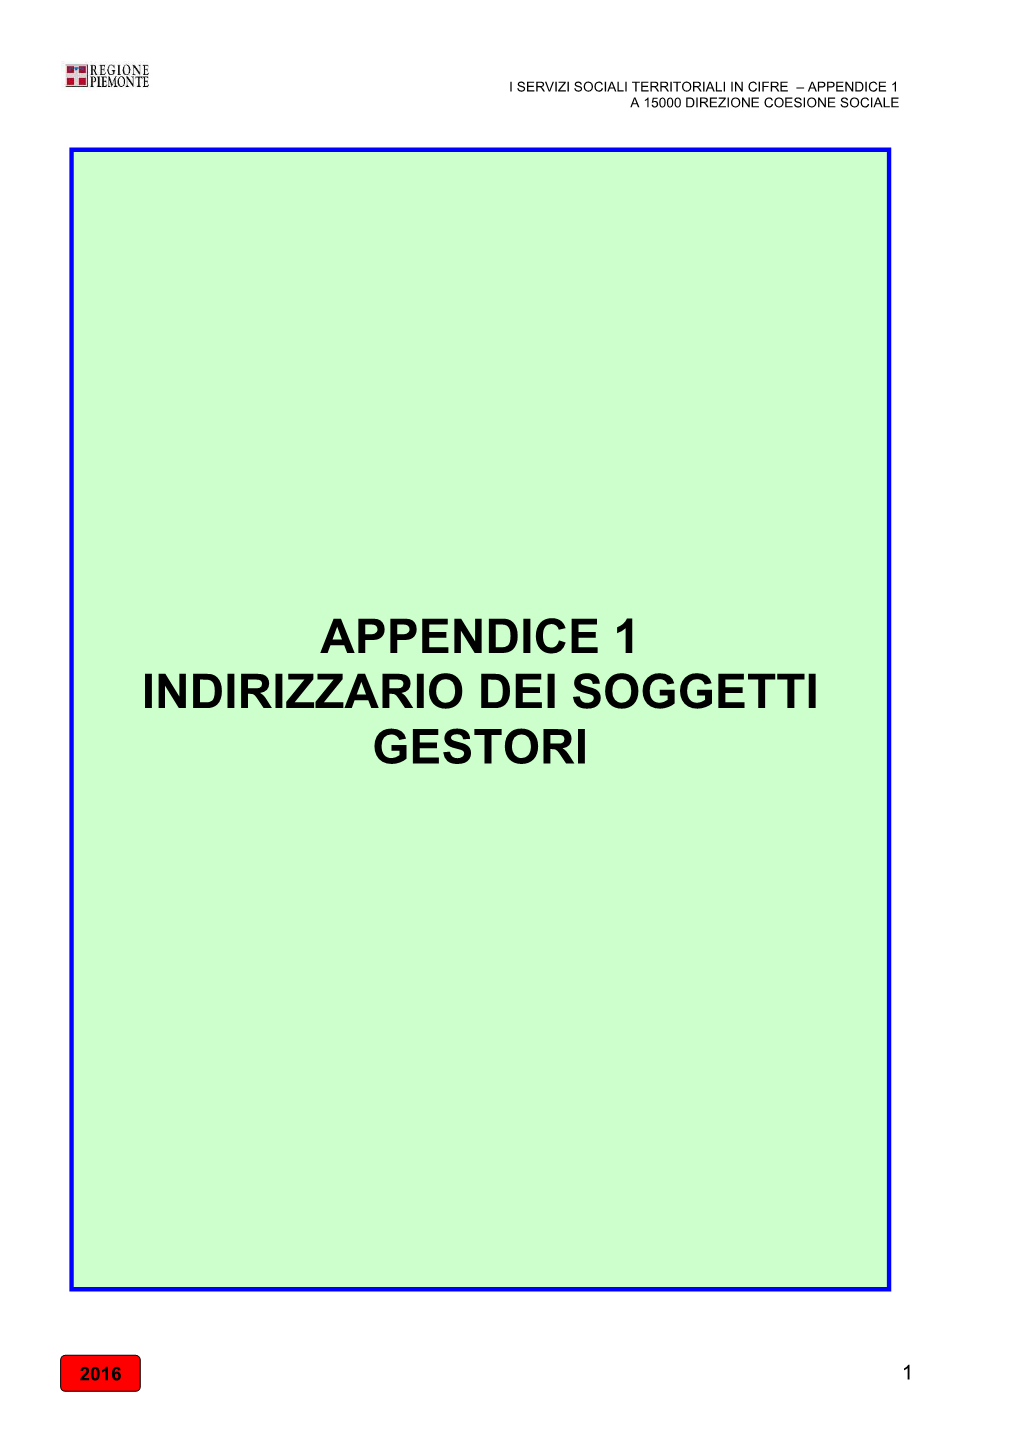 Appendice 1 Indirizzario Dei Soggetti Gestori